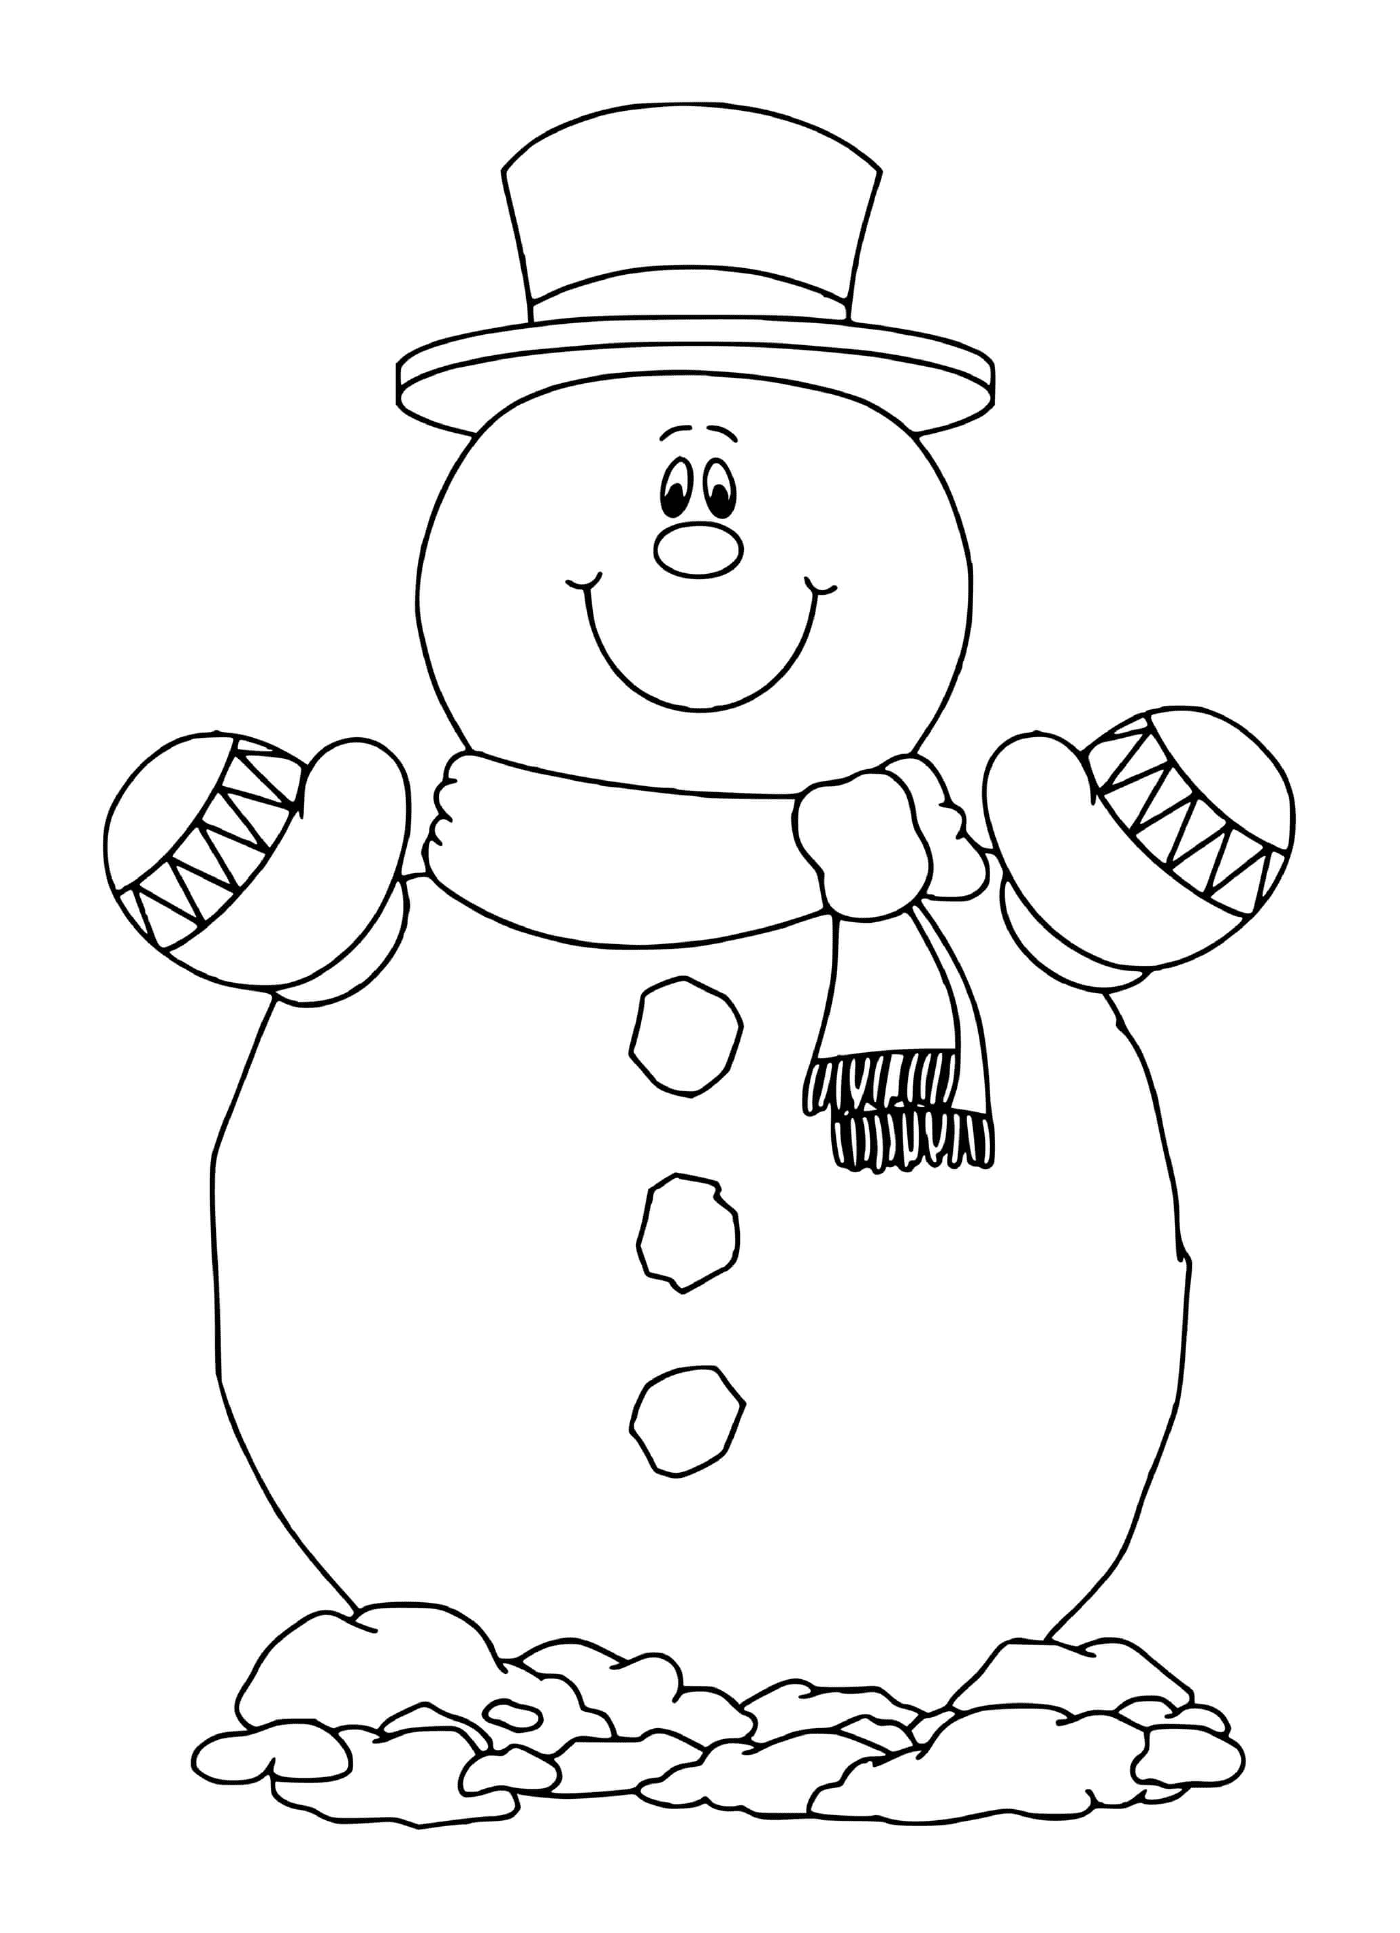  Классический снеговик с улыбкой 